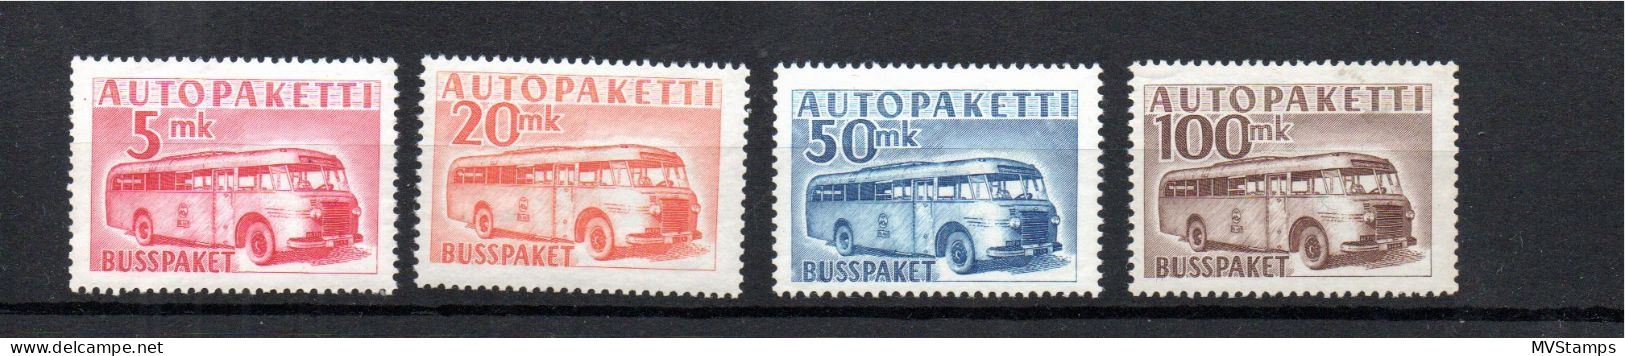 Finnland 1949 Satz APM 6/9 Auto-Paketmarken/Autopaketti Postfrisch - Postbuspakete